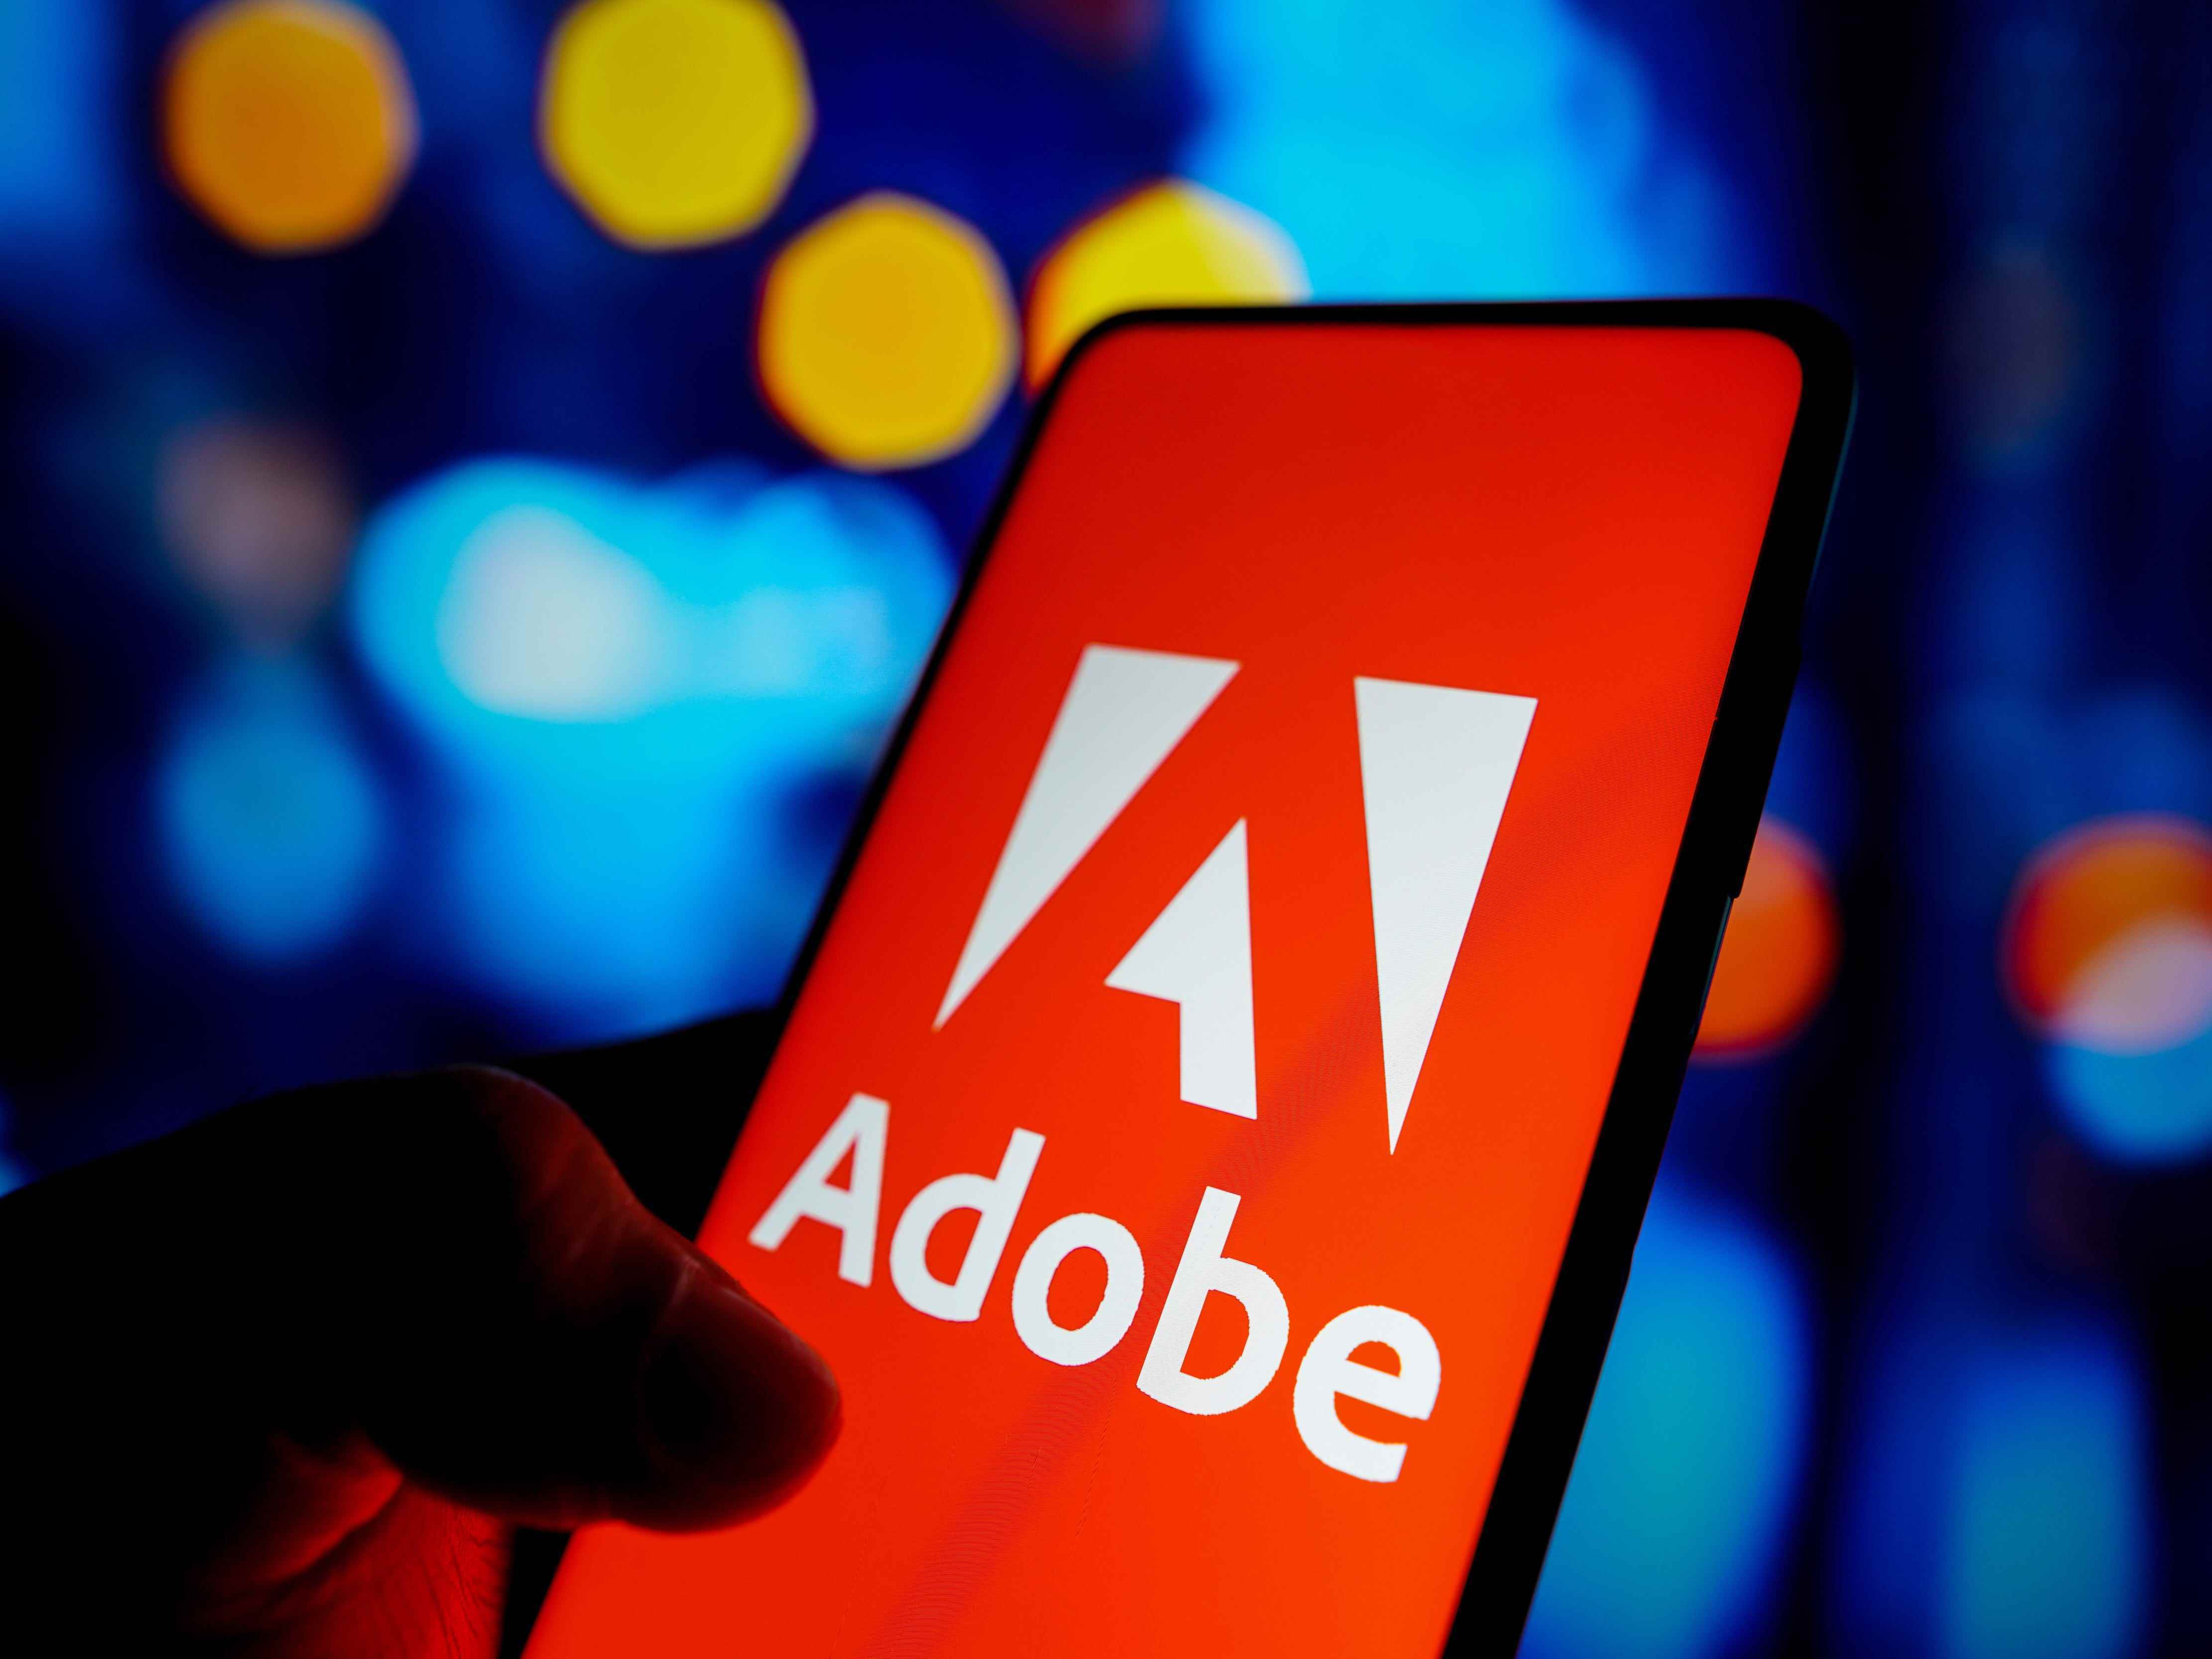 In dieser Abbildung wird das Logo von Adobe Inc. auf einem Smartphone-Bildschirm angezeigt.